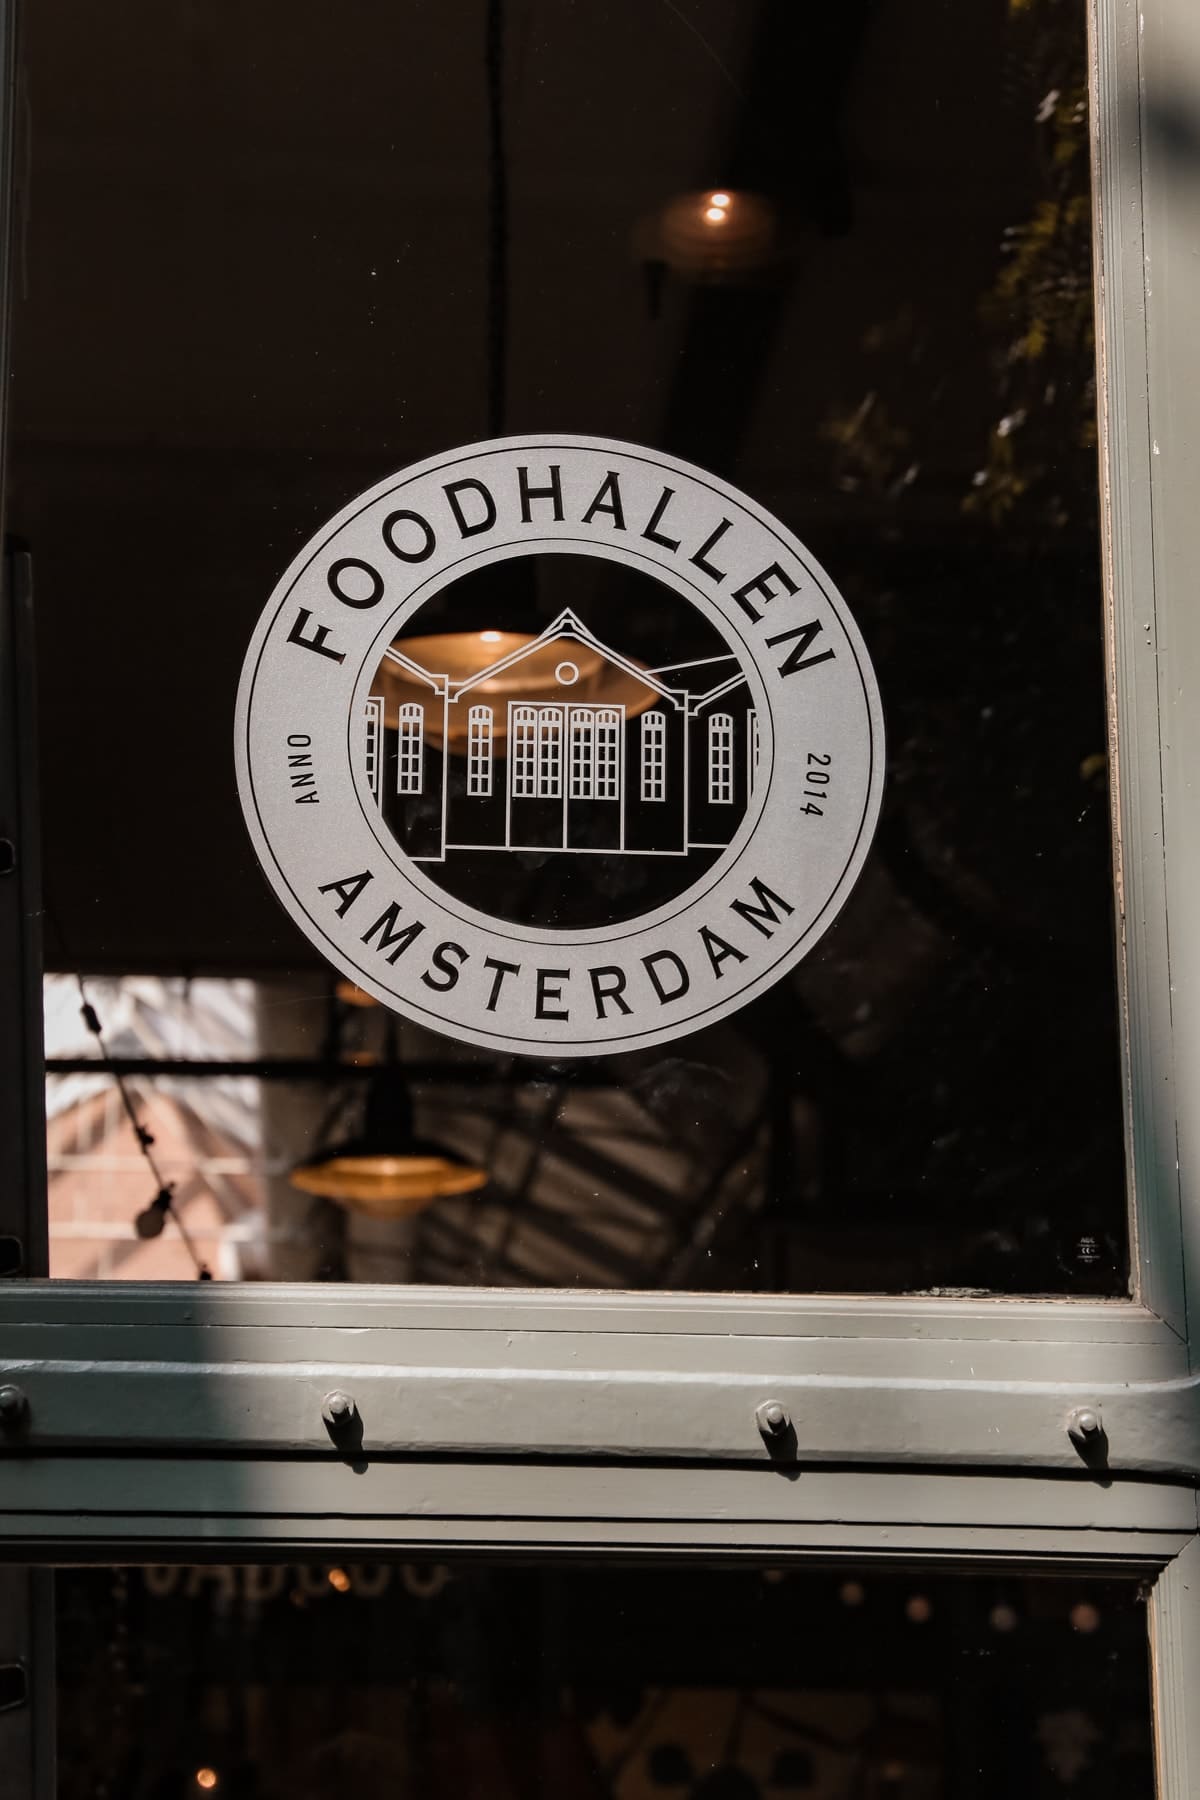 Amsterdam Guide - Die besten Restaurants & Aktivitäten in Holland